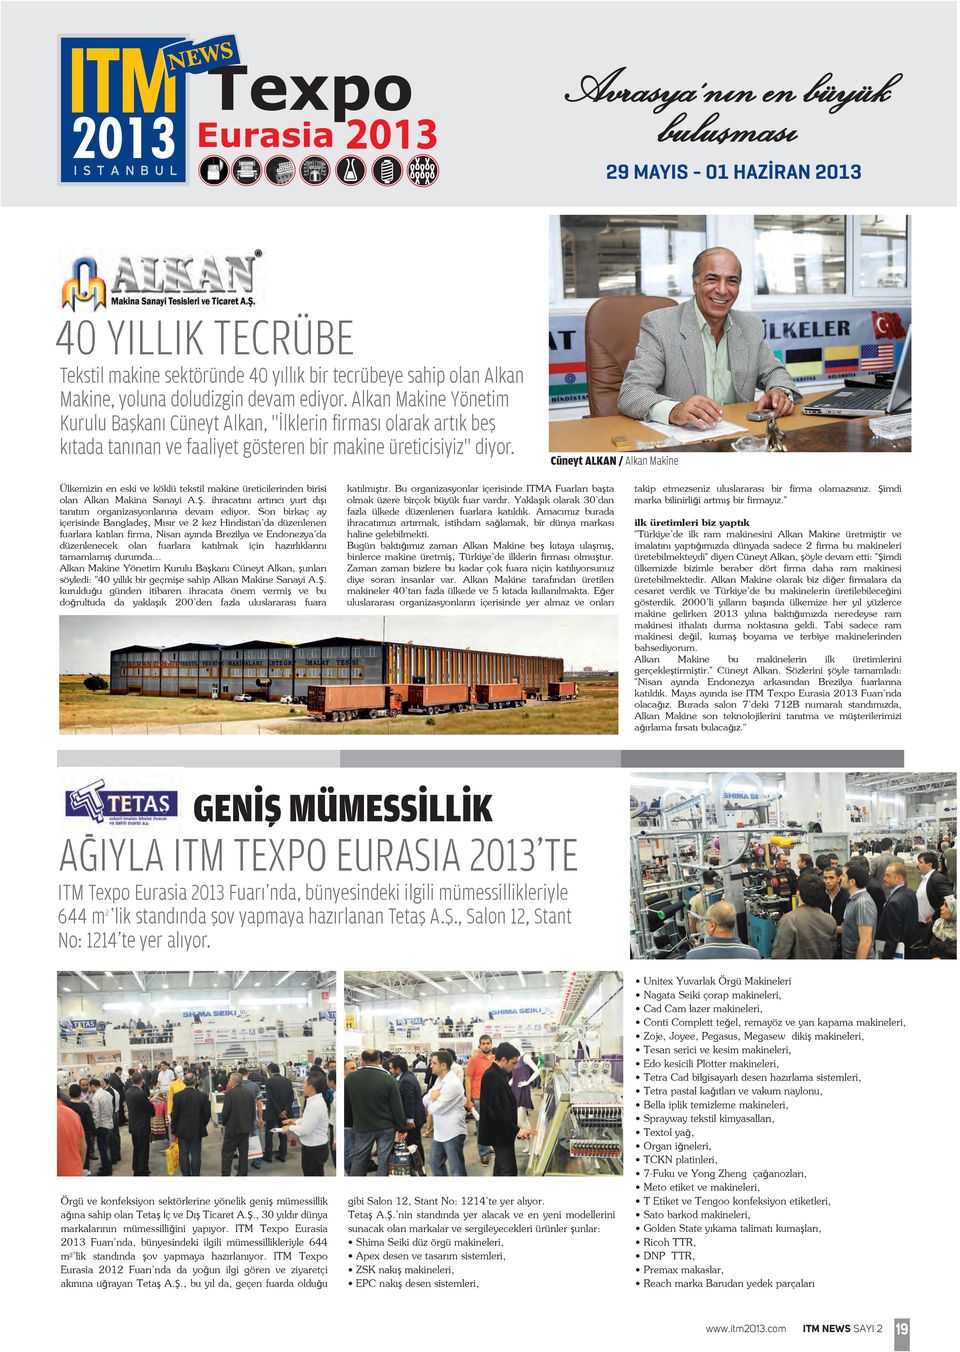 Cüneyt ALKAN / Alkan Makine Ülkemizin en eski ve köklü tekstil makine üreticilerinden birisi olan Alkan Makina Sanayi A.Ş. ihracatını artırıcı yurt dışı tanıtım organizasyonlarına devam ediyor.